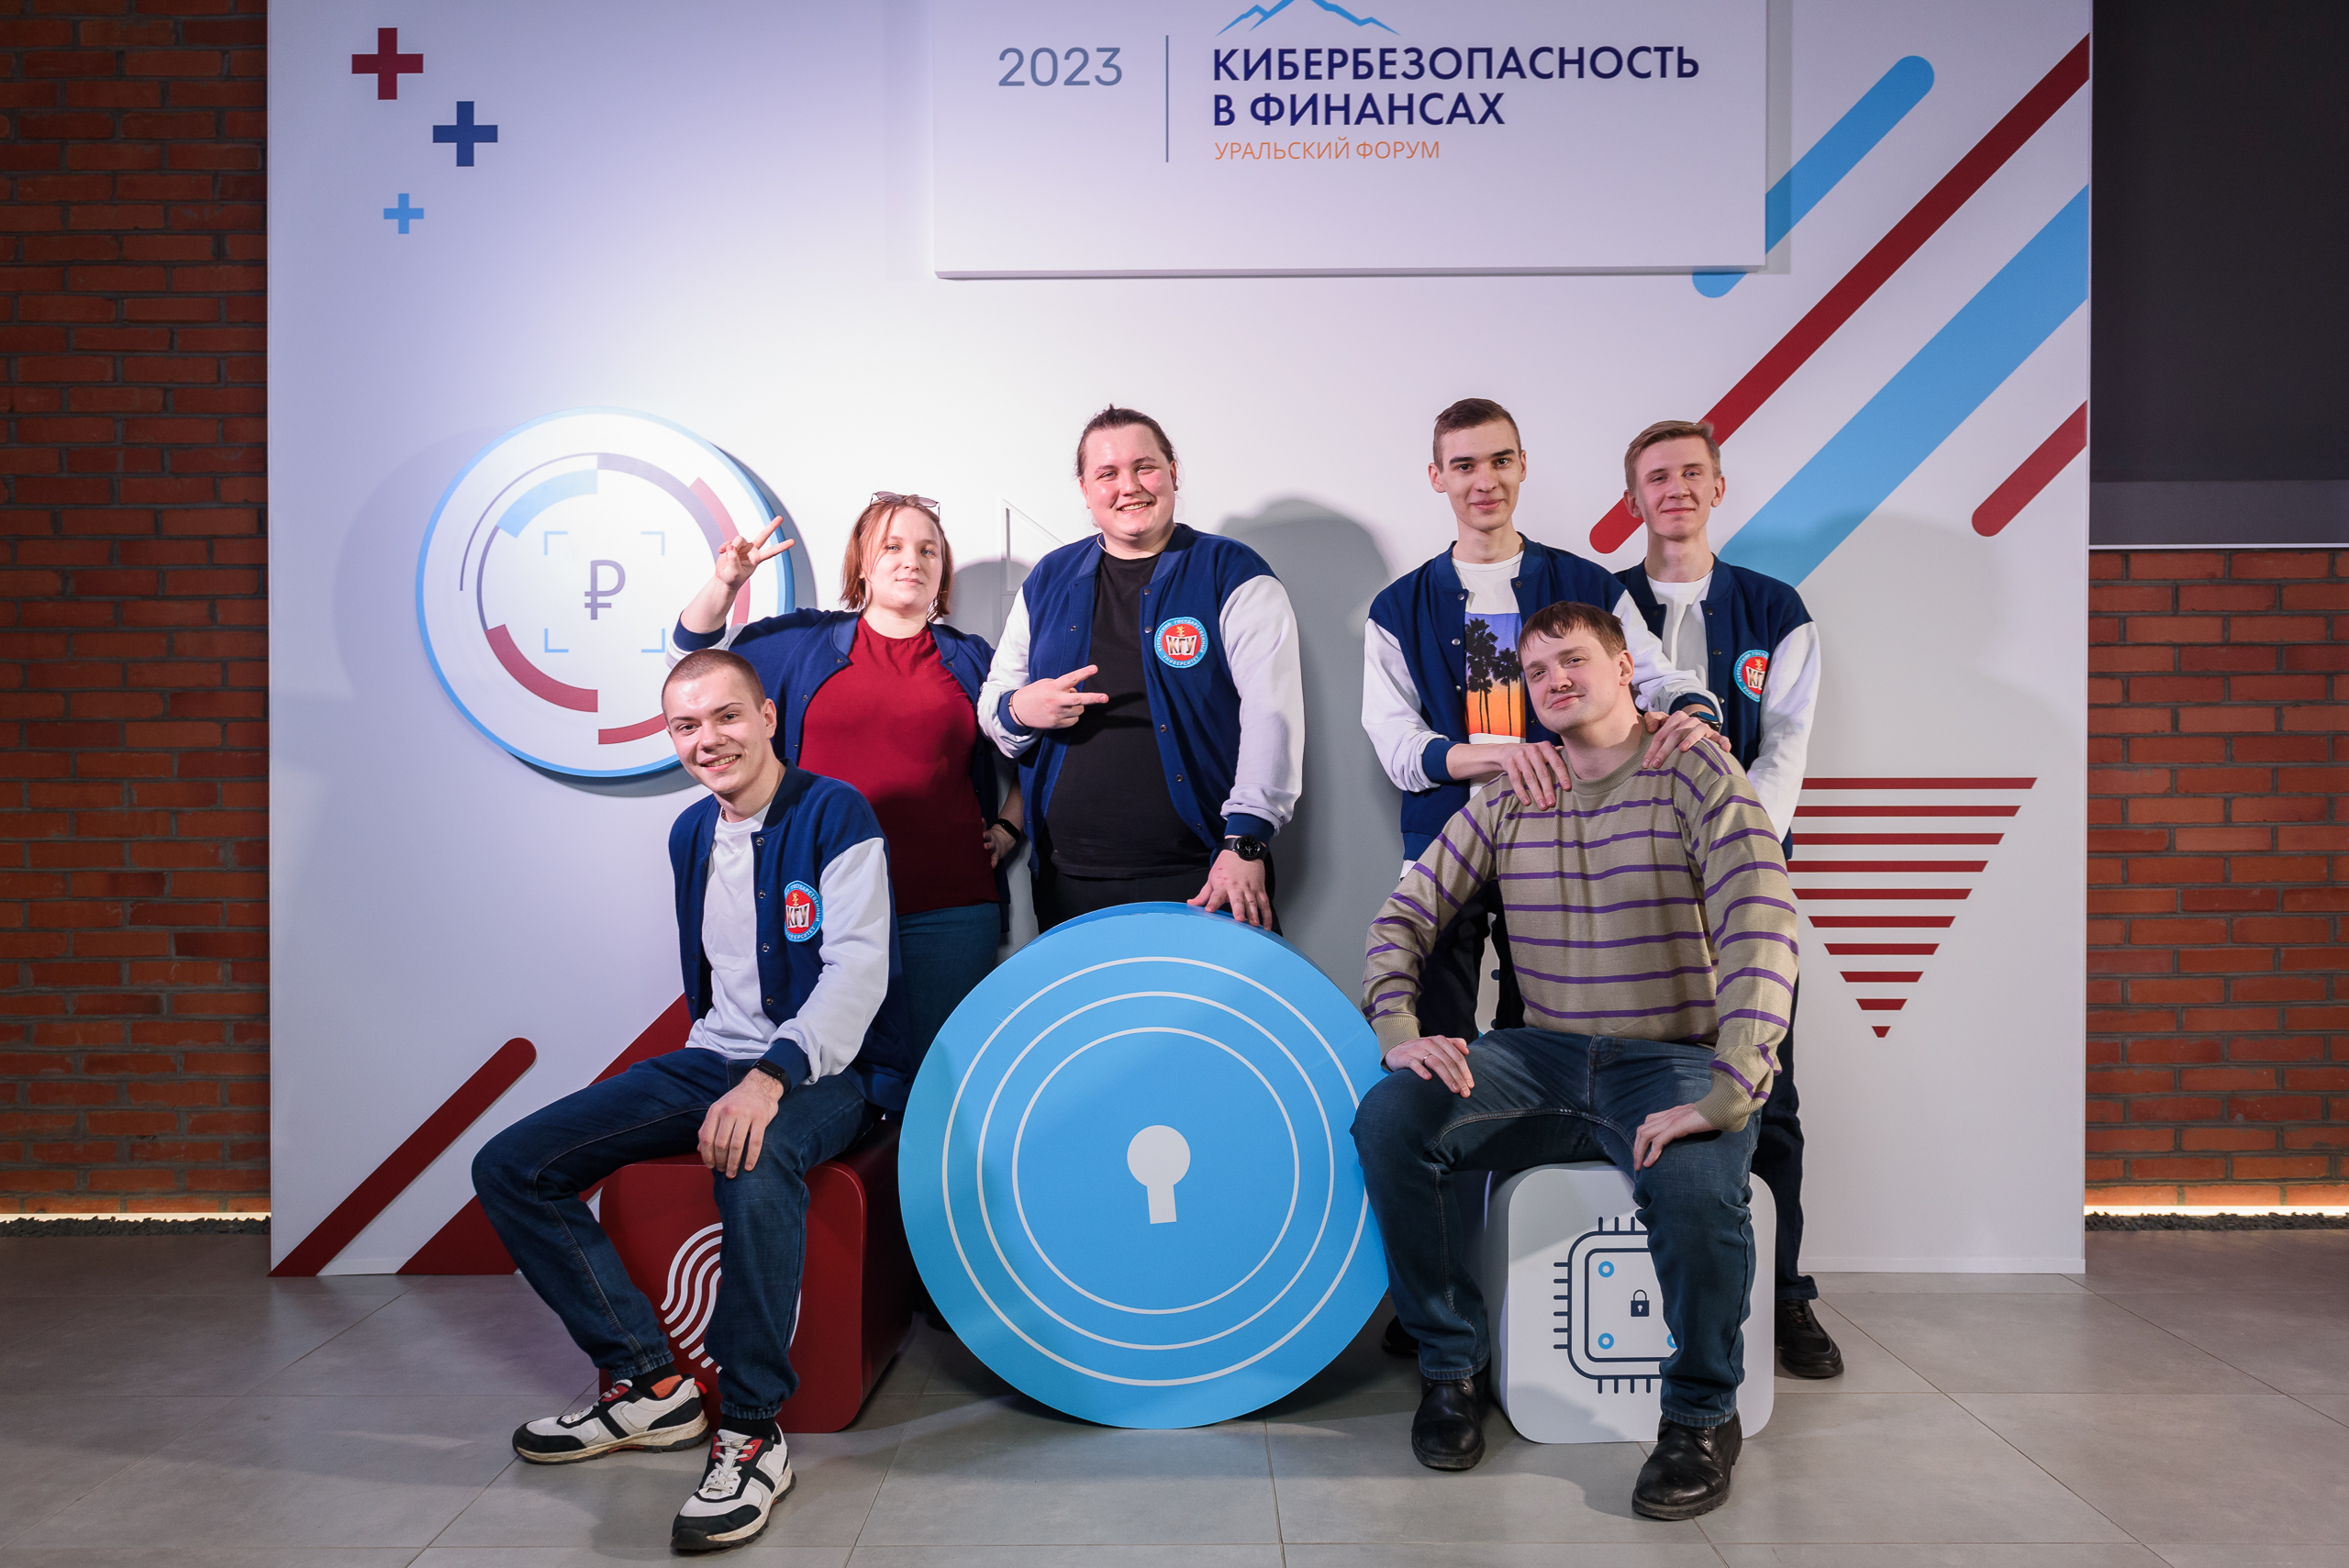 Студенты КГУ вошли в топ-5 молодежной программы Уральского форума «Кибербезопасность в финансах»